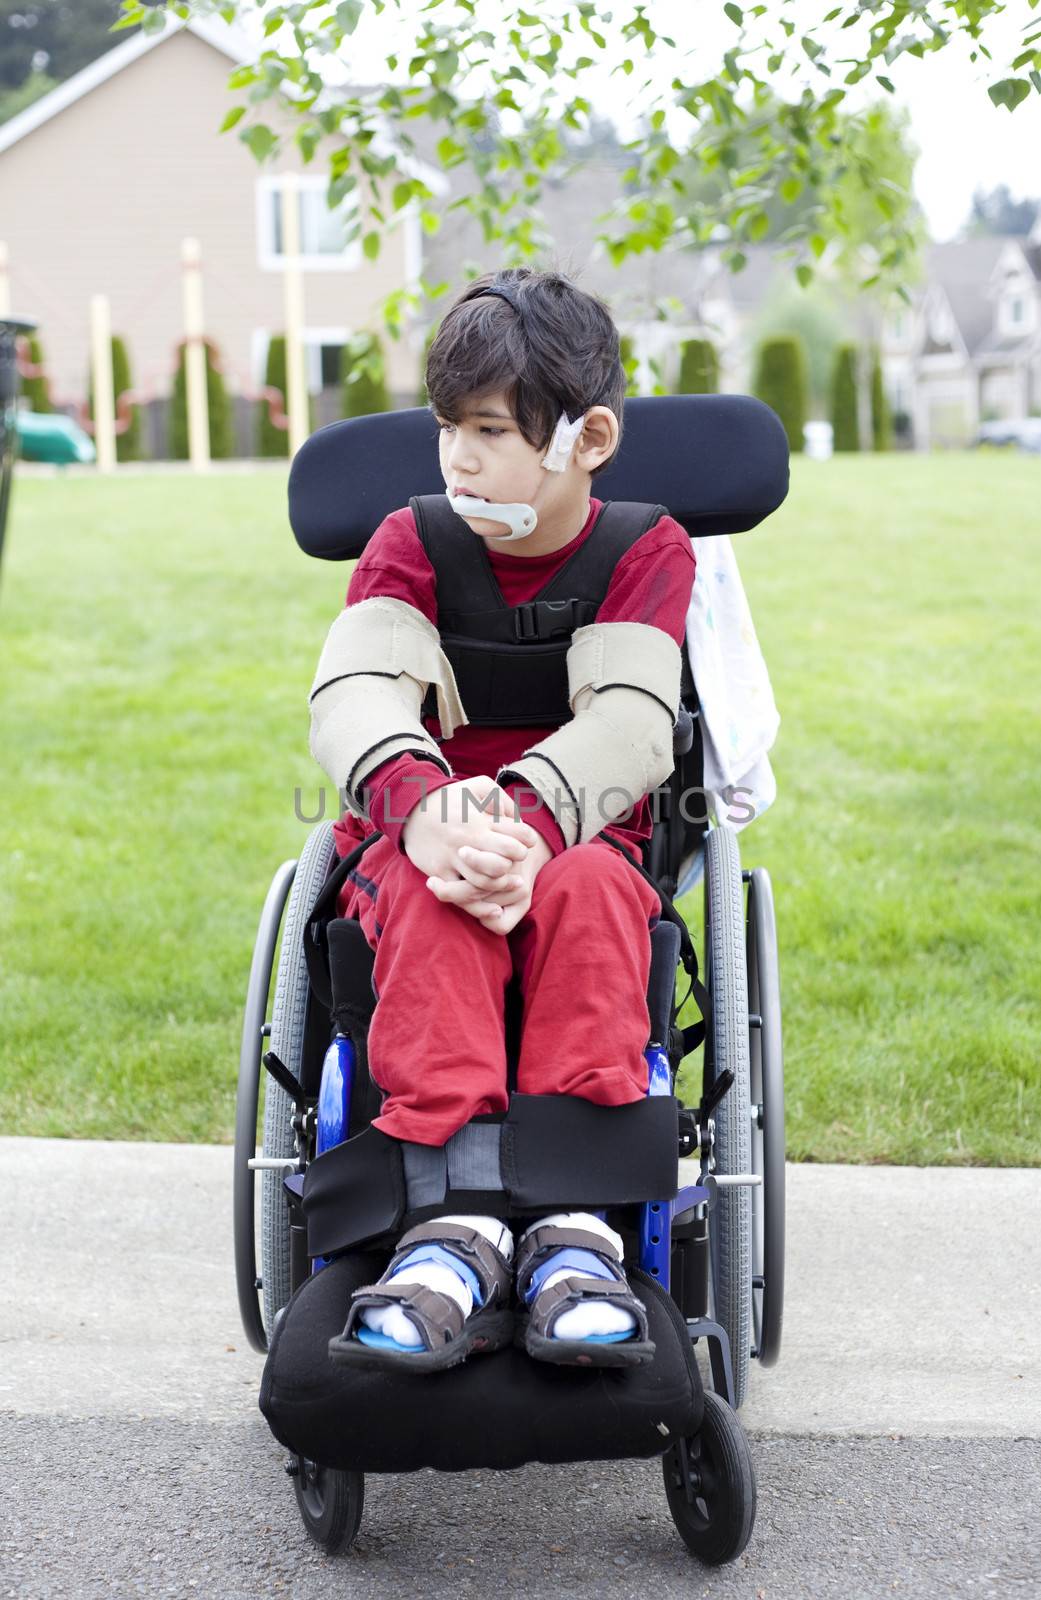 Disabled little boy in wheelchair outdoors  by jarenwicklund